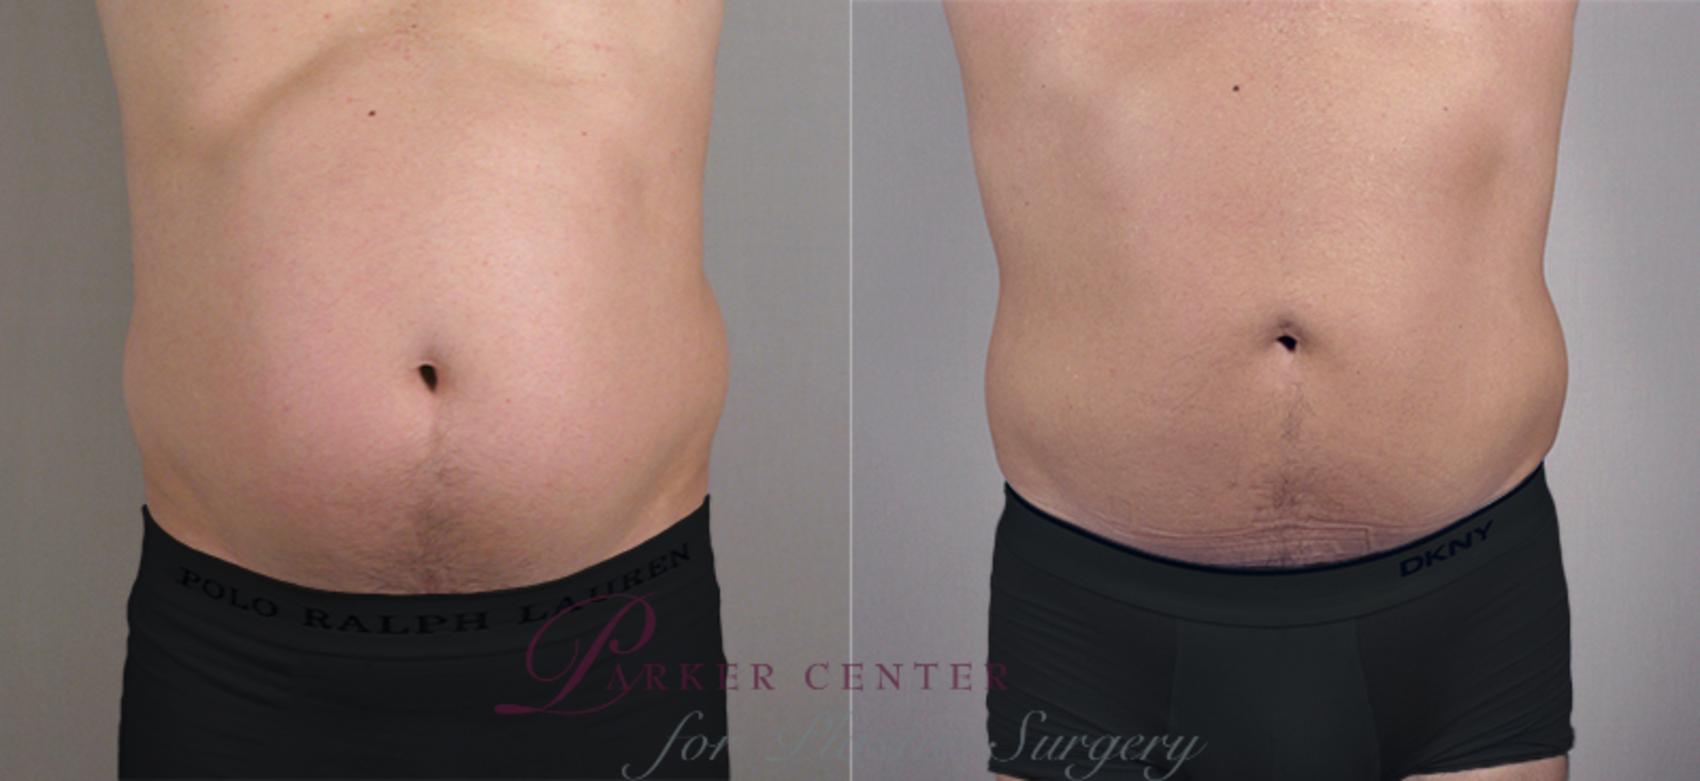 Liposuction Case 760 Before & After View #1 | Paramus, NJ | Parker Center for Plastic Surgery